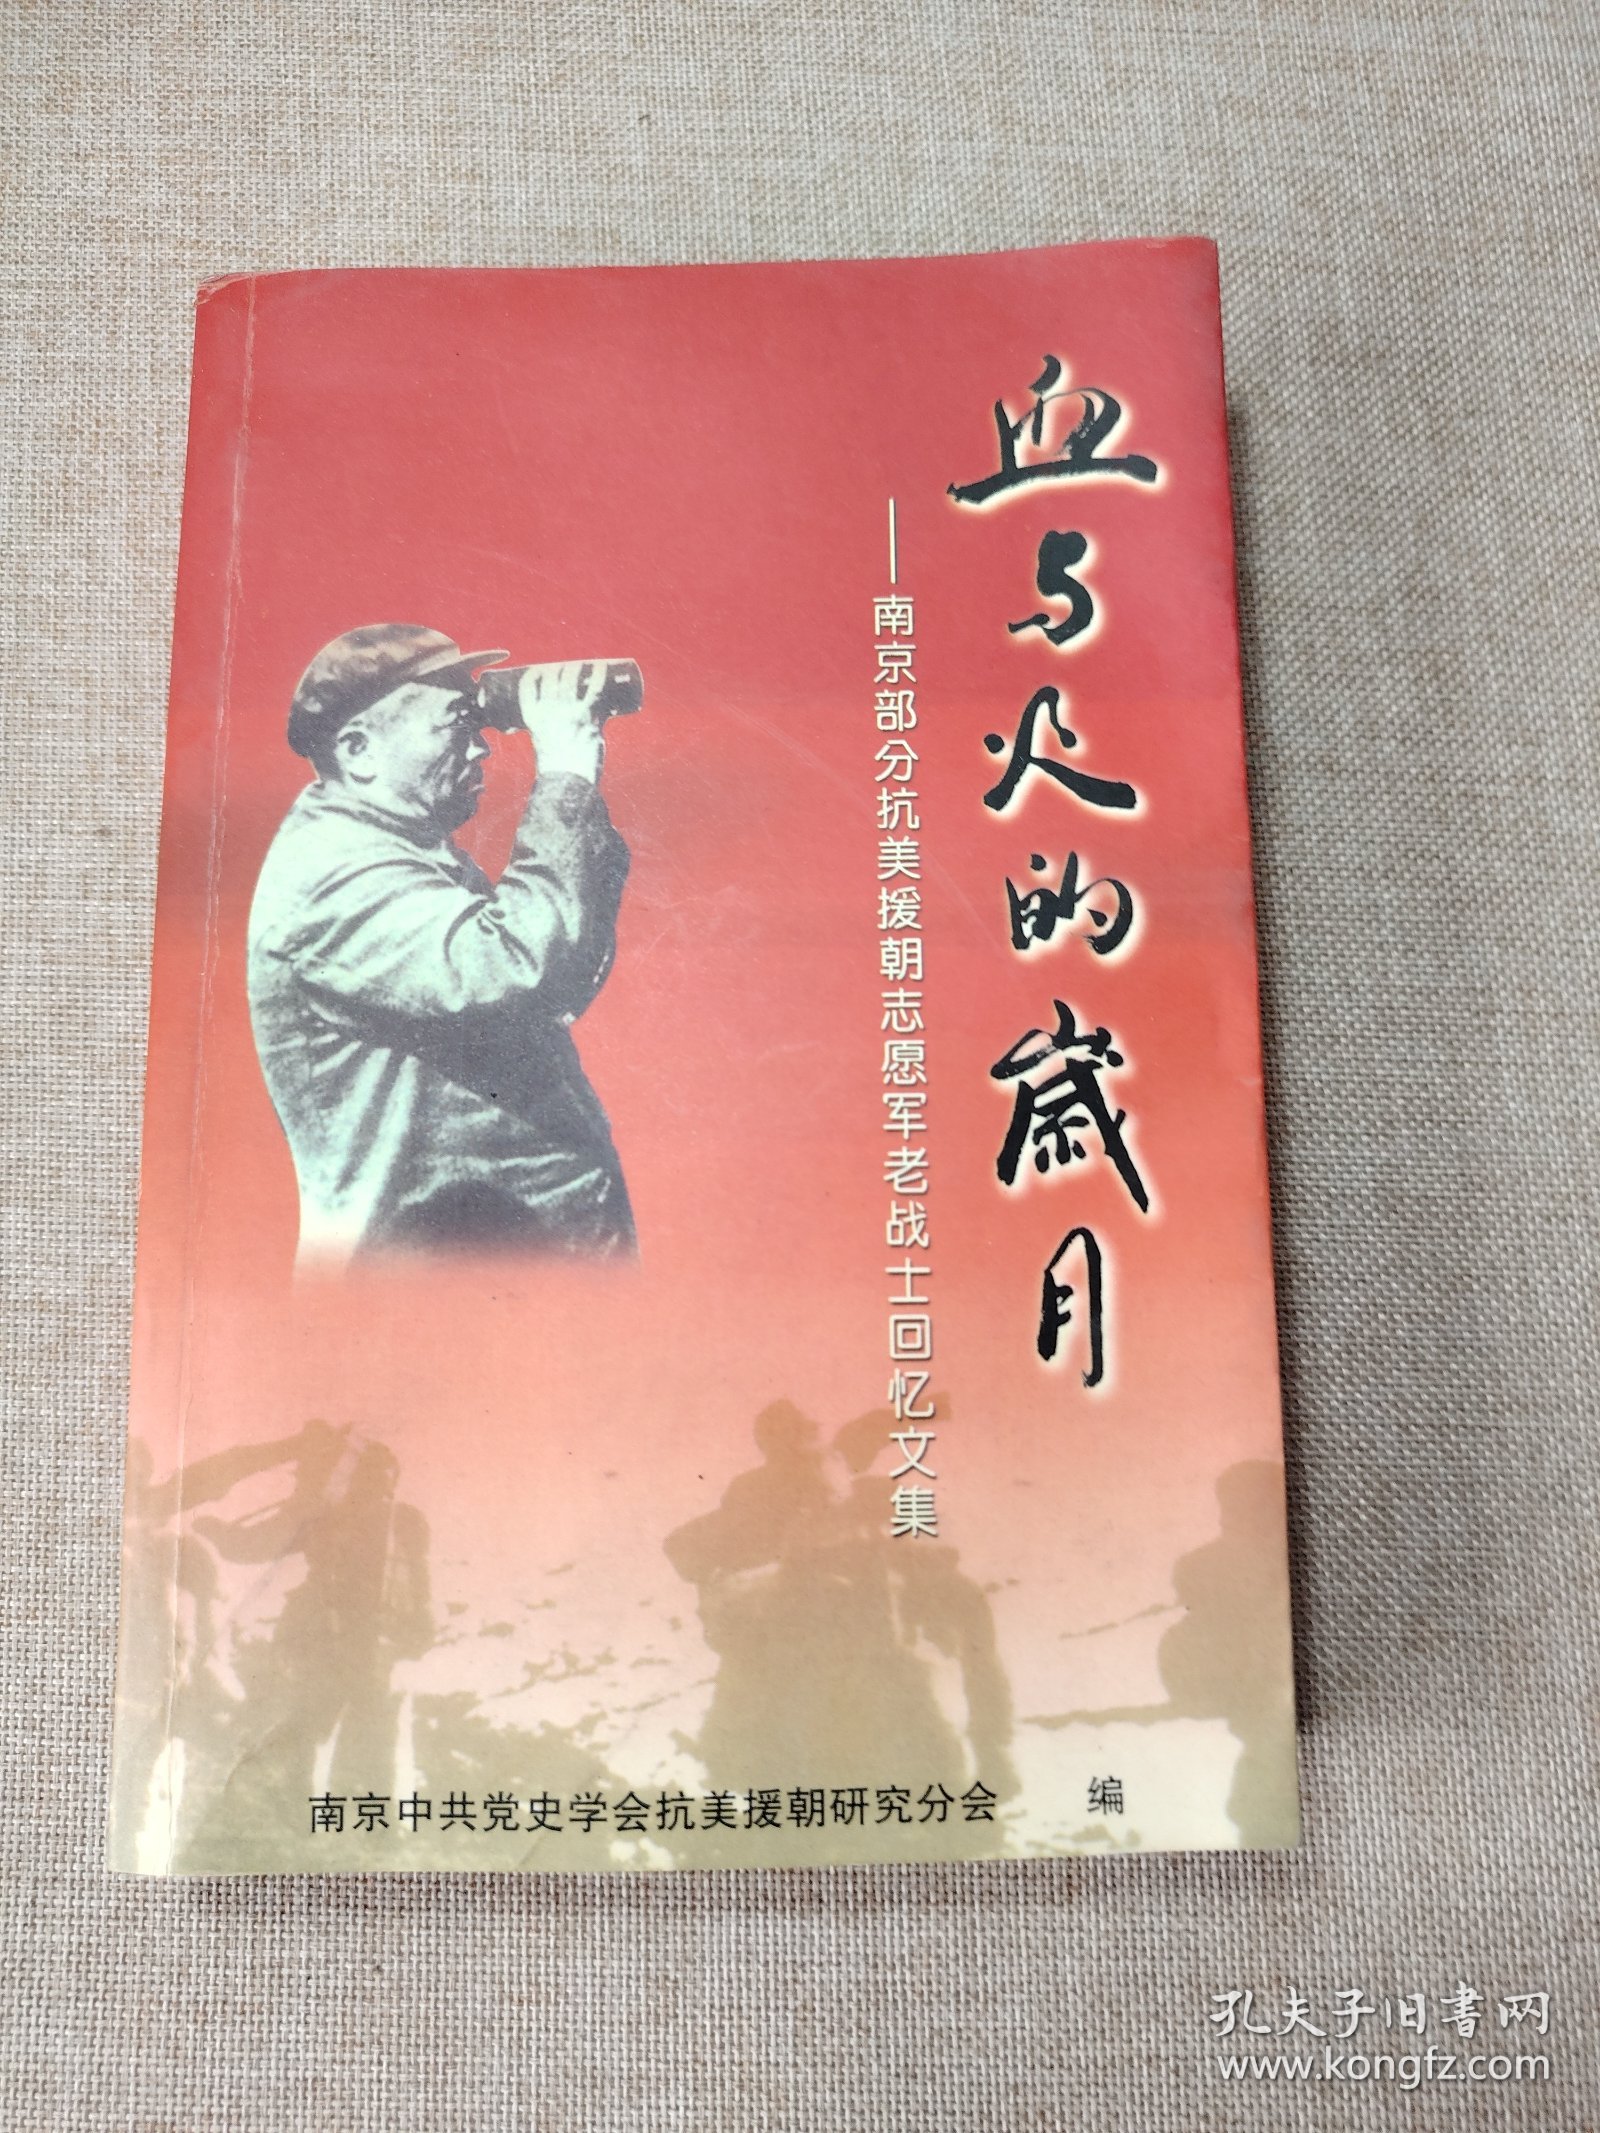 血与火的岁月 ——南京部分抗美援朝志愿军战士回忆文集